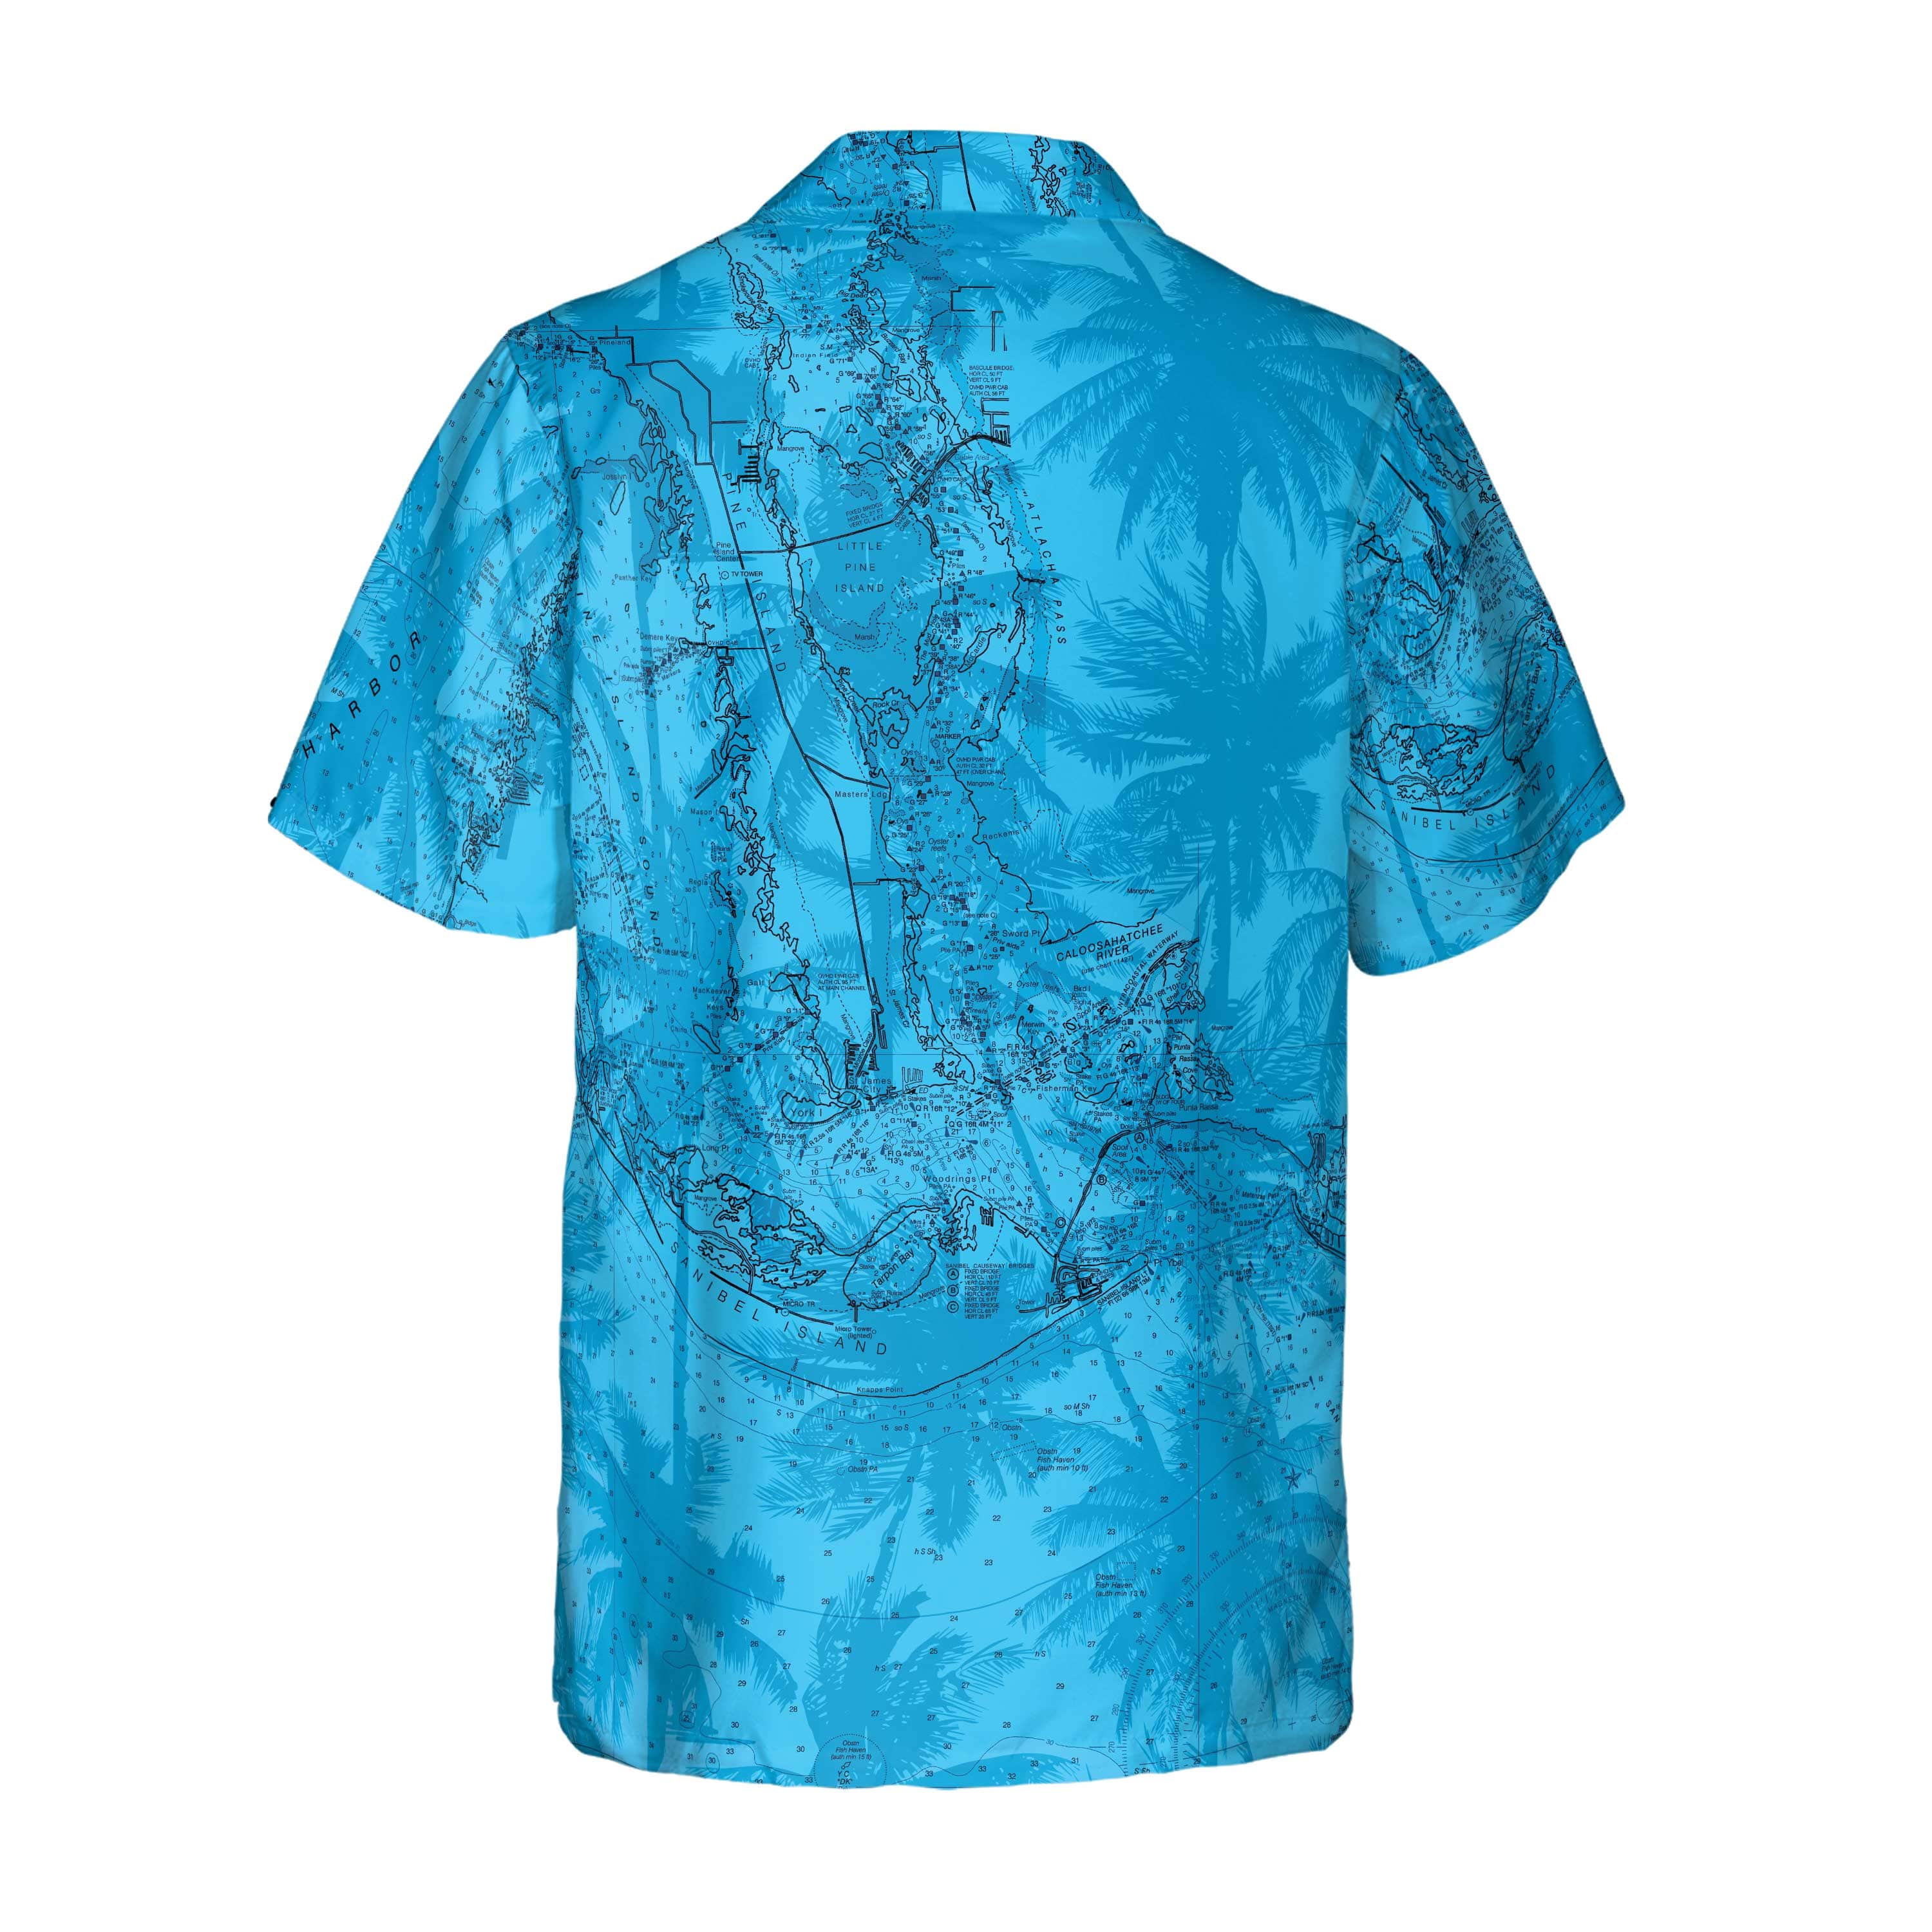 The Punta Gorda Blue Palms Camp Shirt